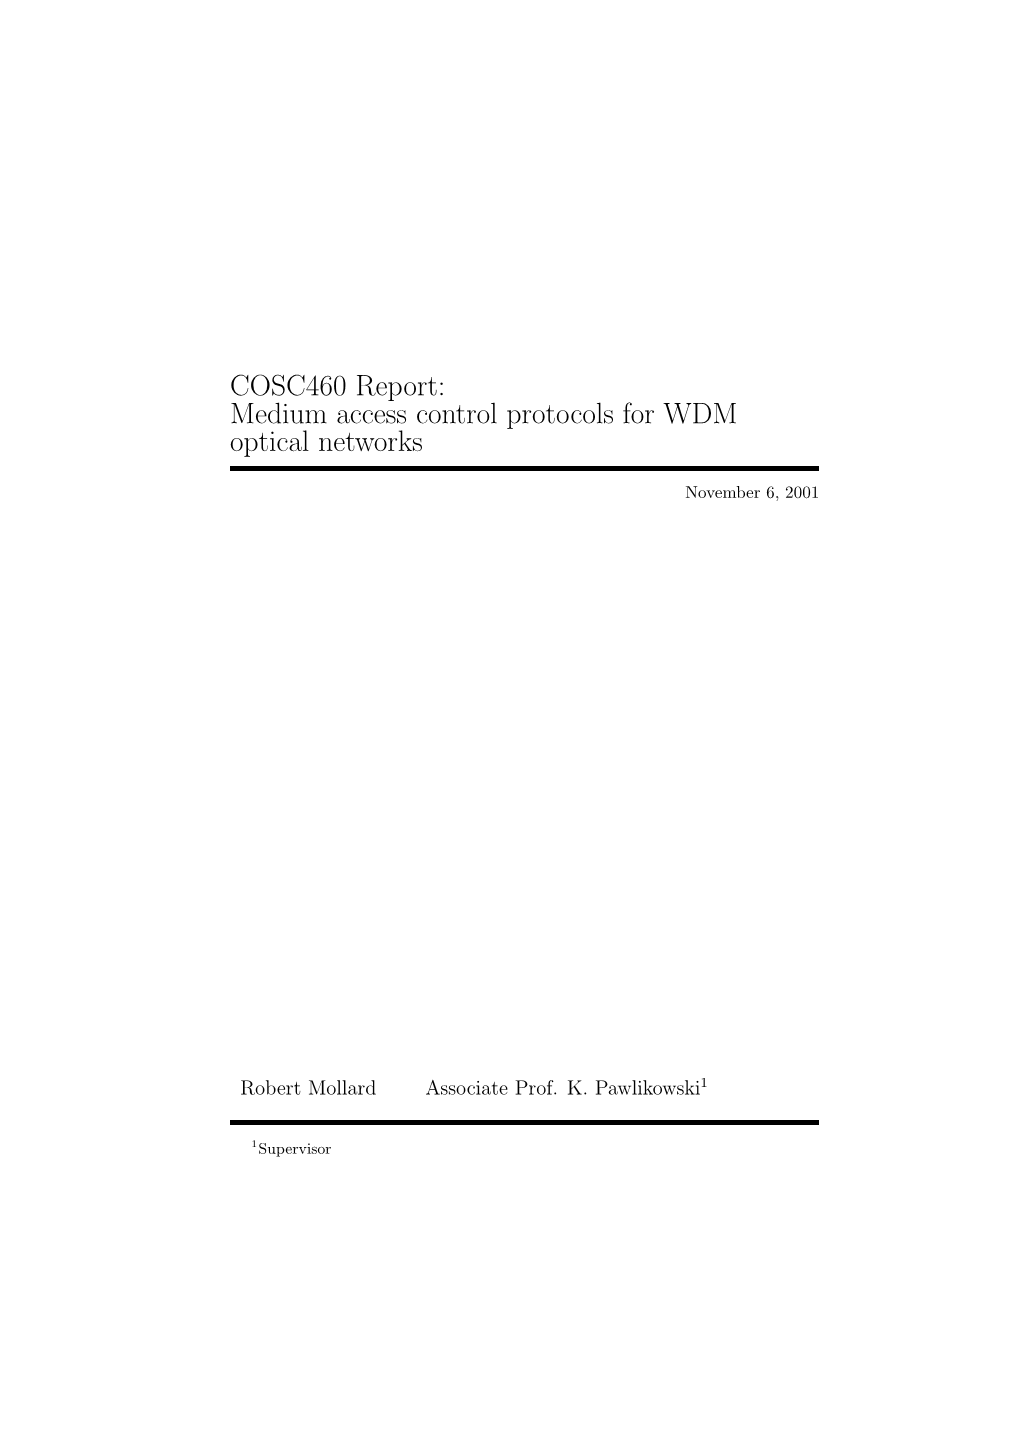 COSC460 Report: Medium Access Control Protocols for WDM Optical Networks